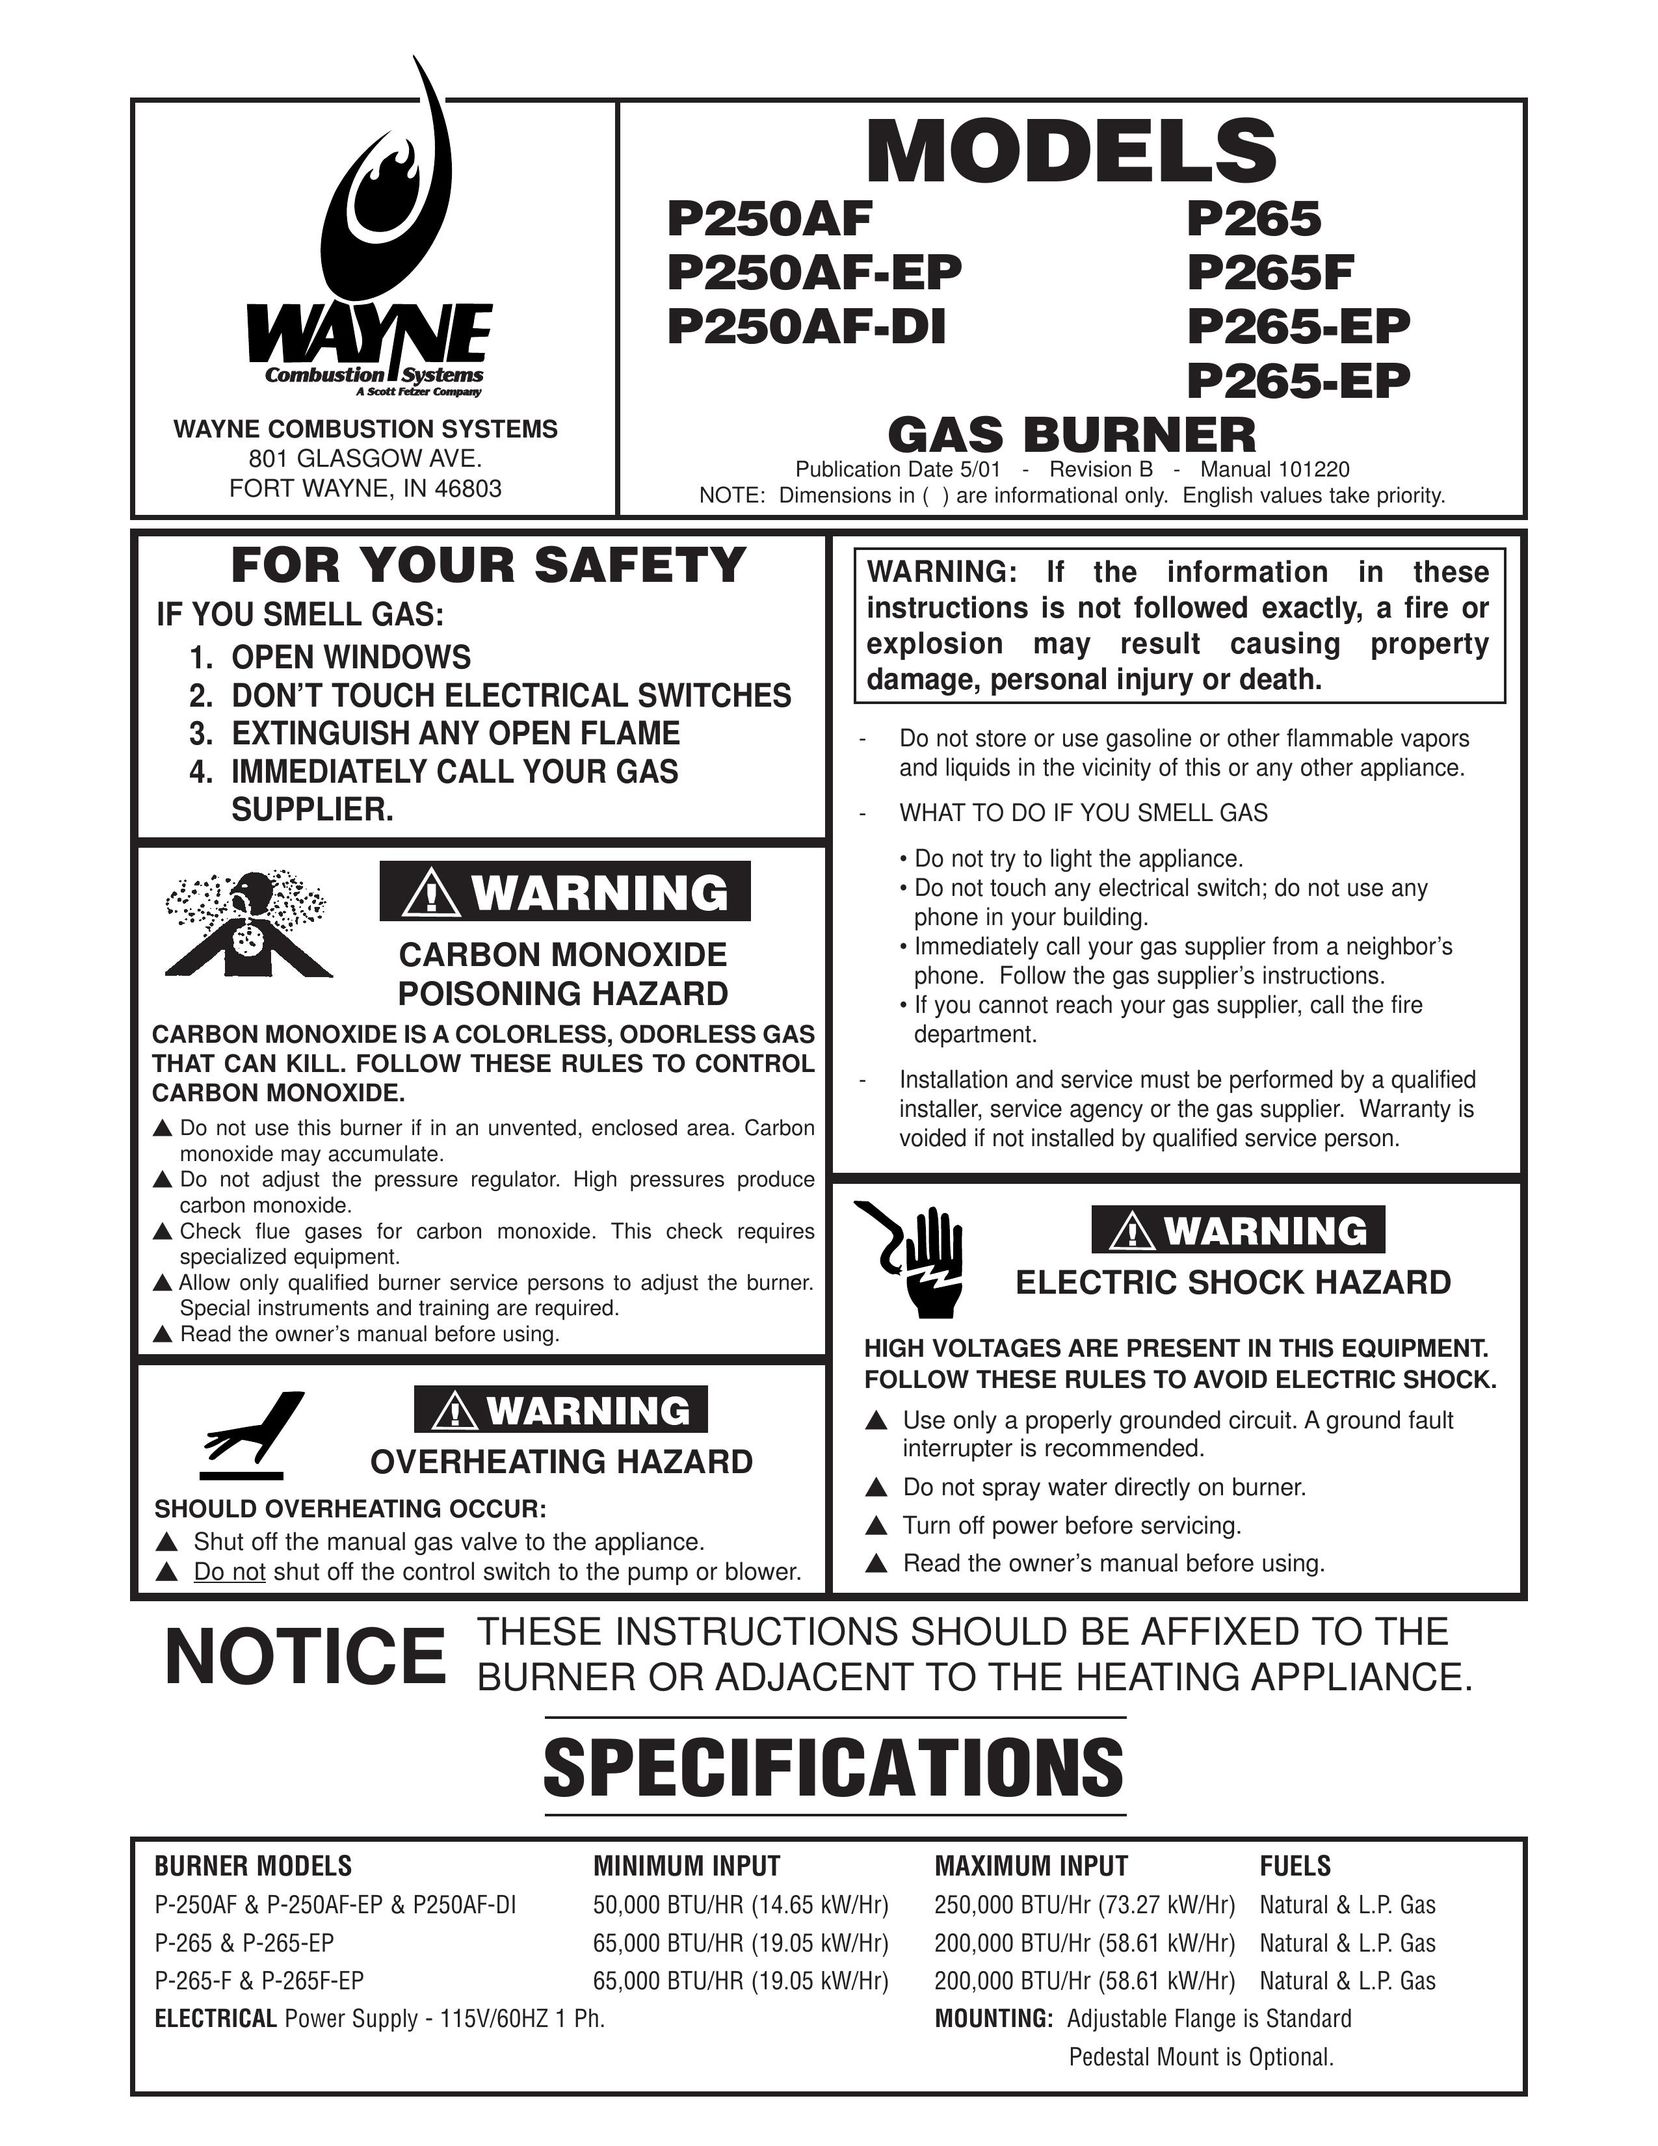 Wayne P265 Burner User Manual